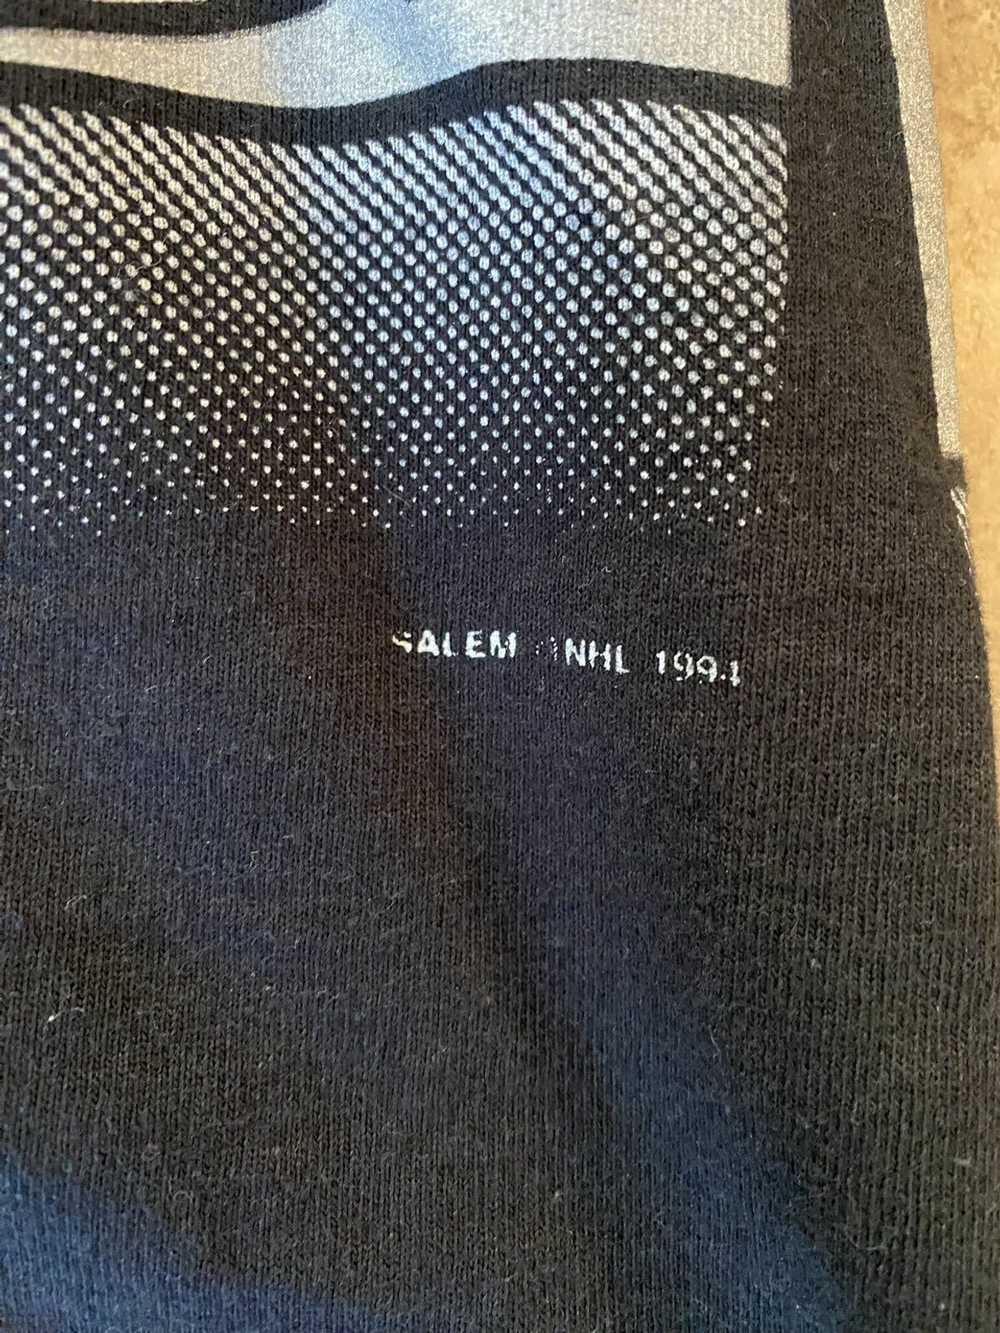 Salem Sportswear Vintage 1994 salem sportswear nh… - image 2